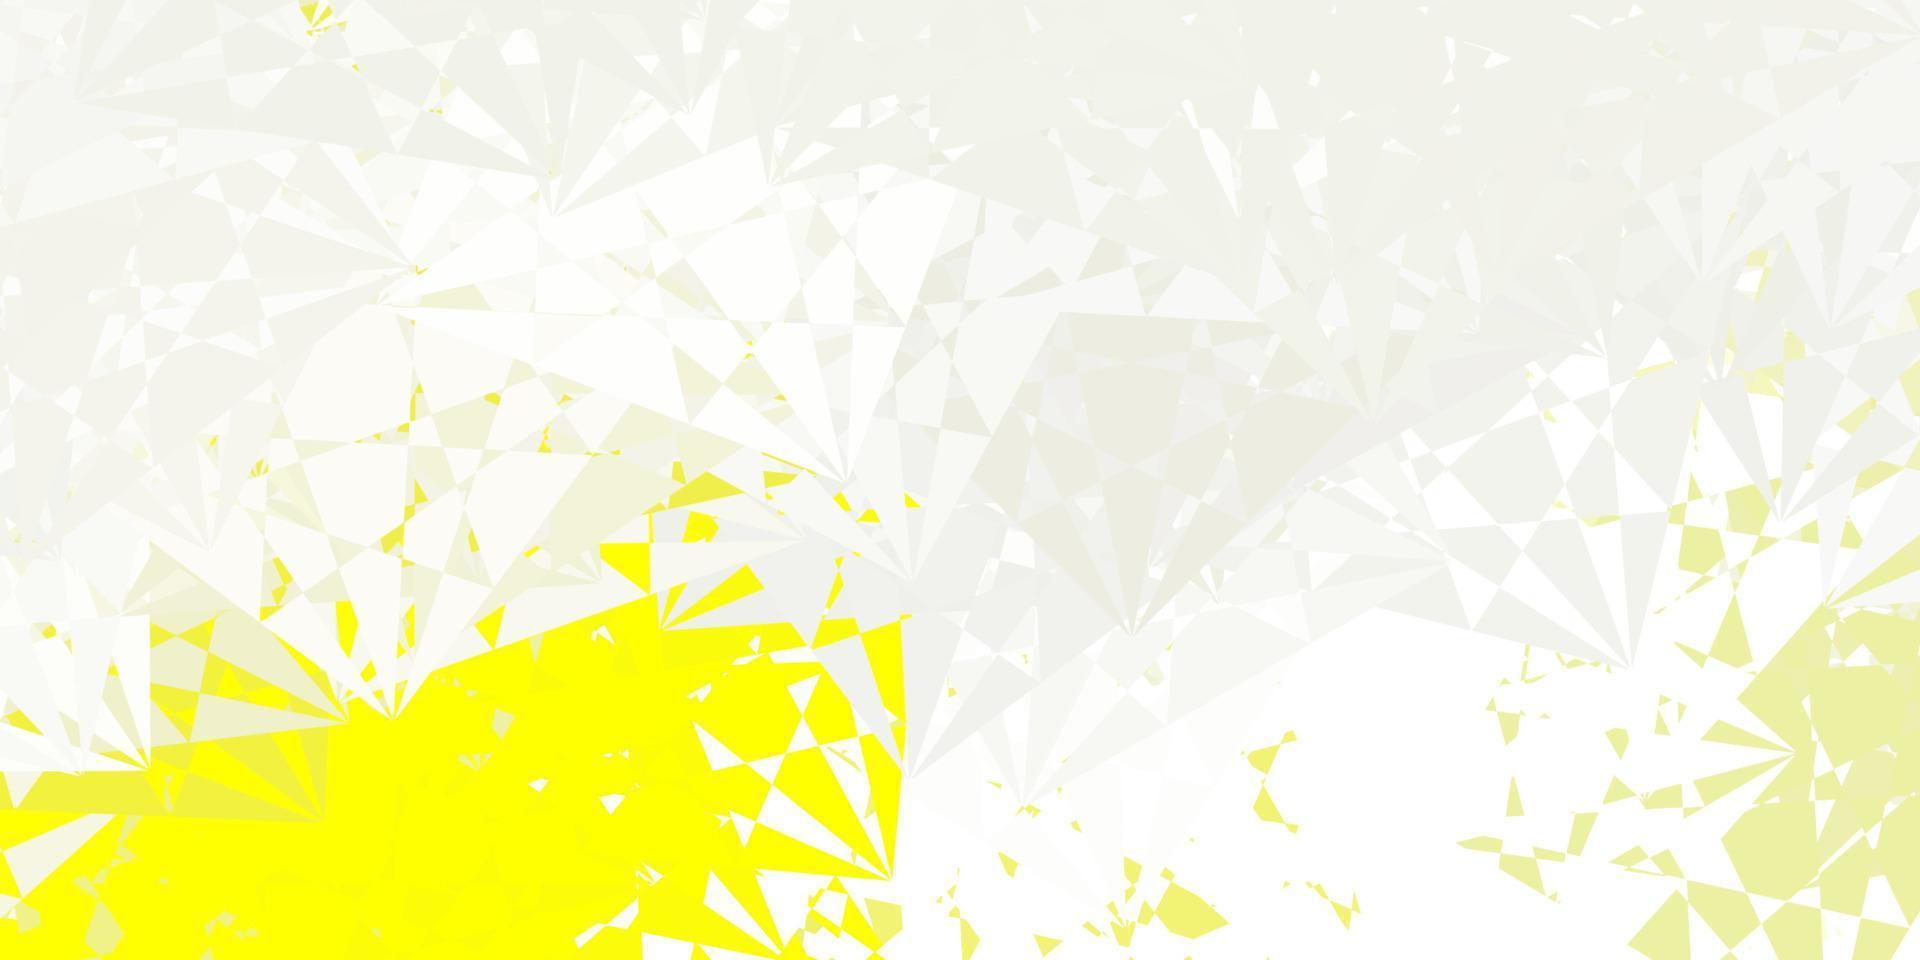 toile de fond de vecteur jaune clair avec des triangles, des lignes.